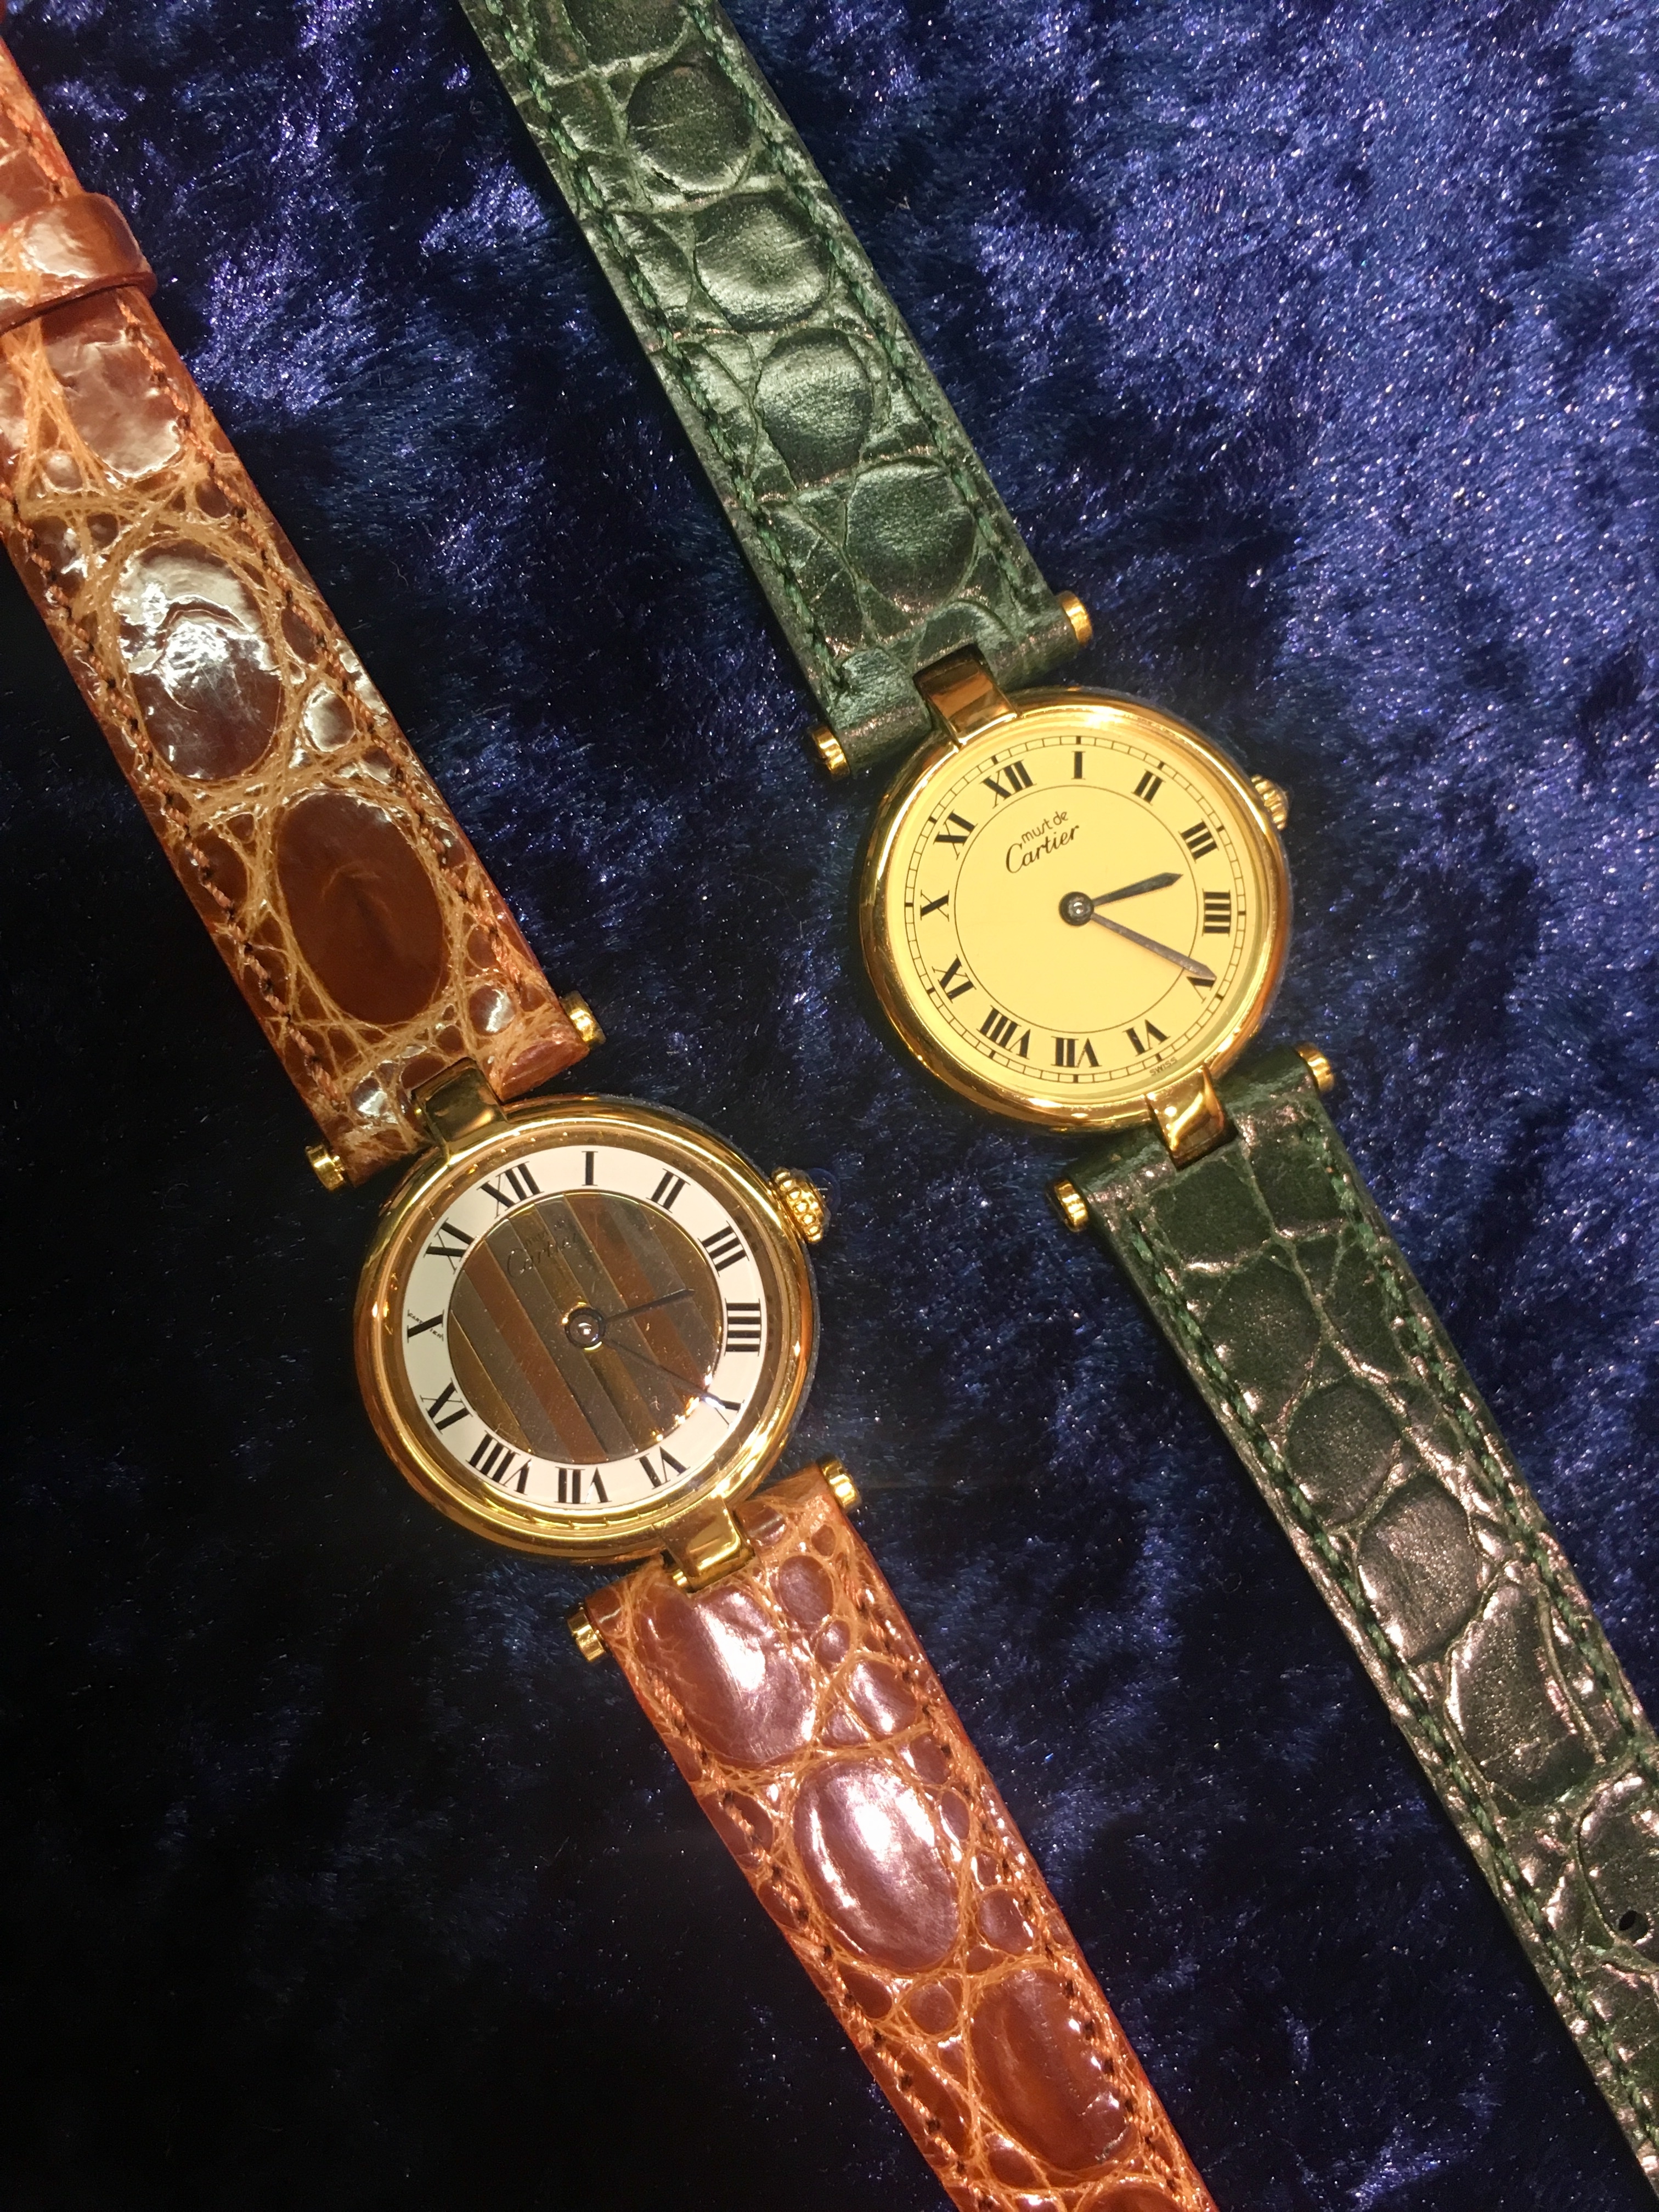 カルティエ(Cartier) | ブランド腕時計の正規販売店紹介サイトGressive/グレッシブ